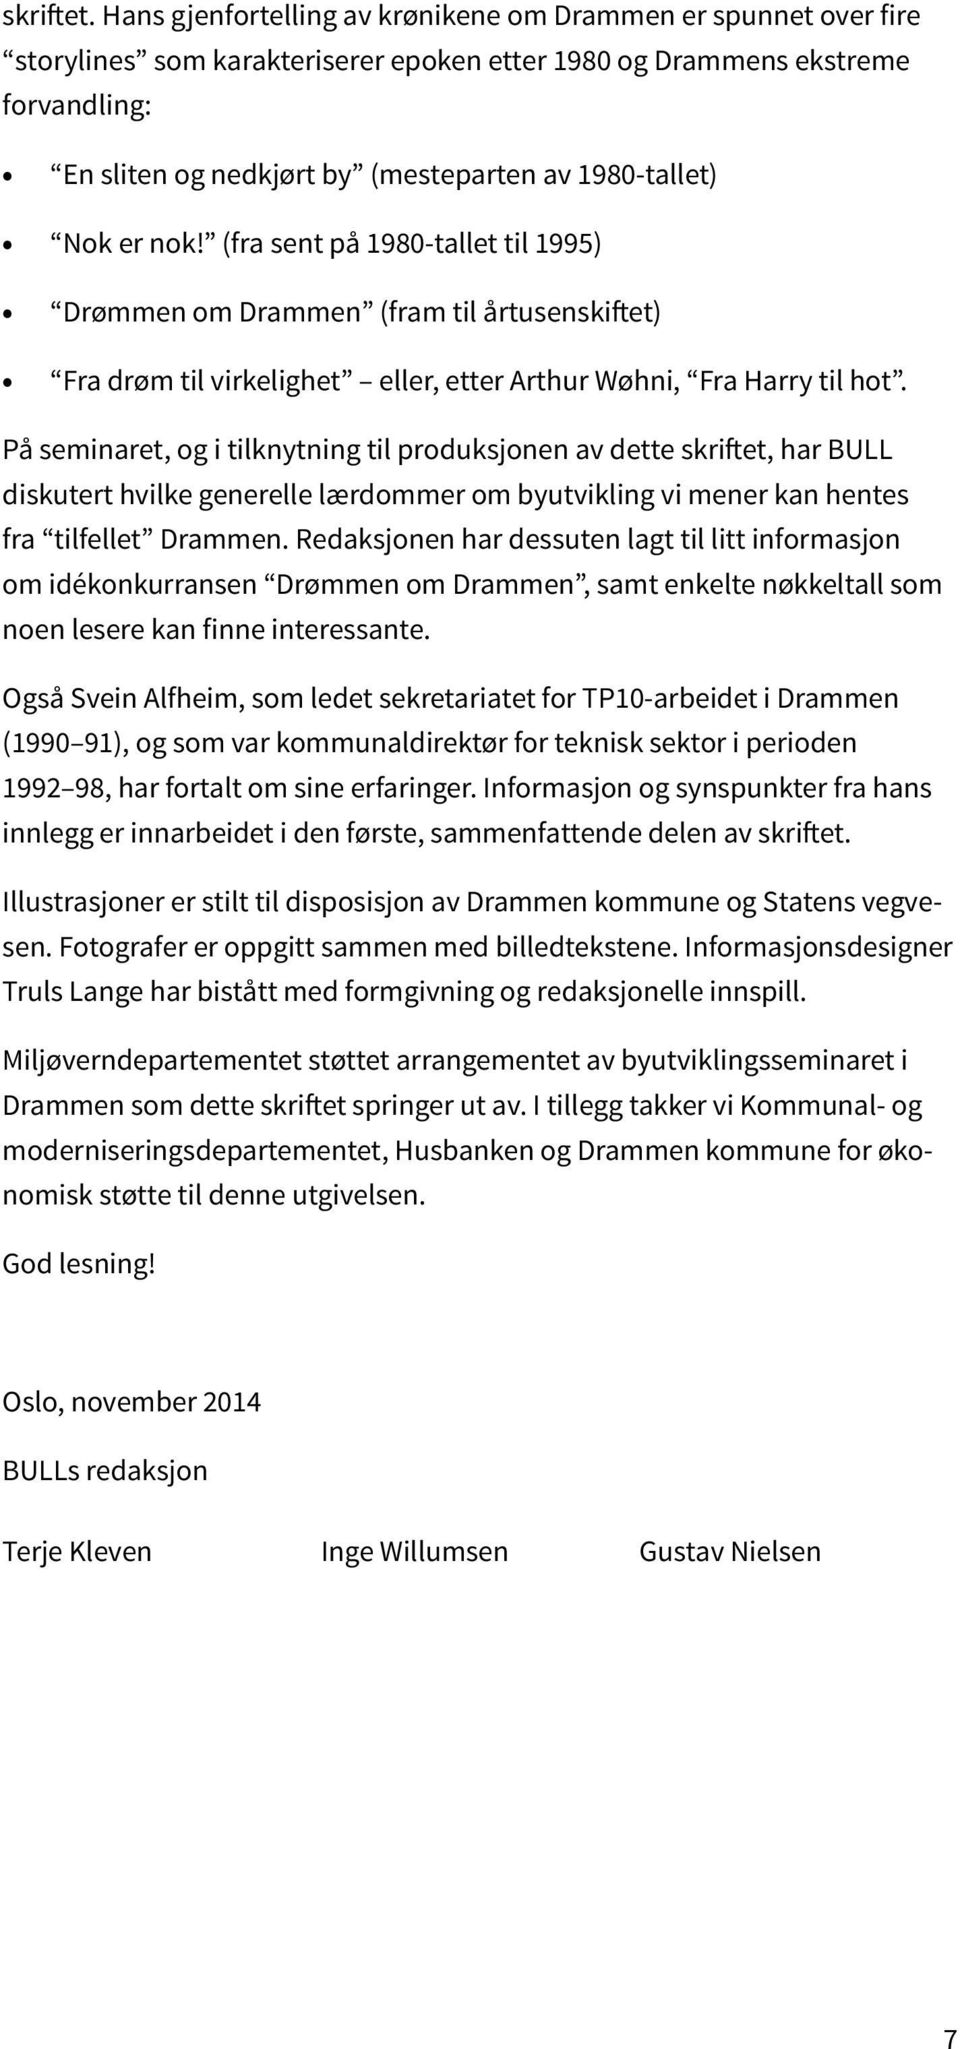 1980-tallet) Nok er nok! (fra sent på 1980-tallet til 1995) Drømmen om Drammen (fram til årtusenskiftet) Fra drøm til virkelighet eller, etter Arthur Wøhni, Fra Harry til hot.